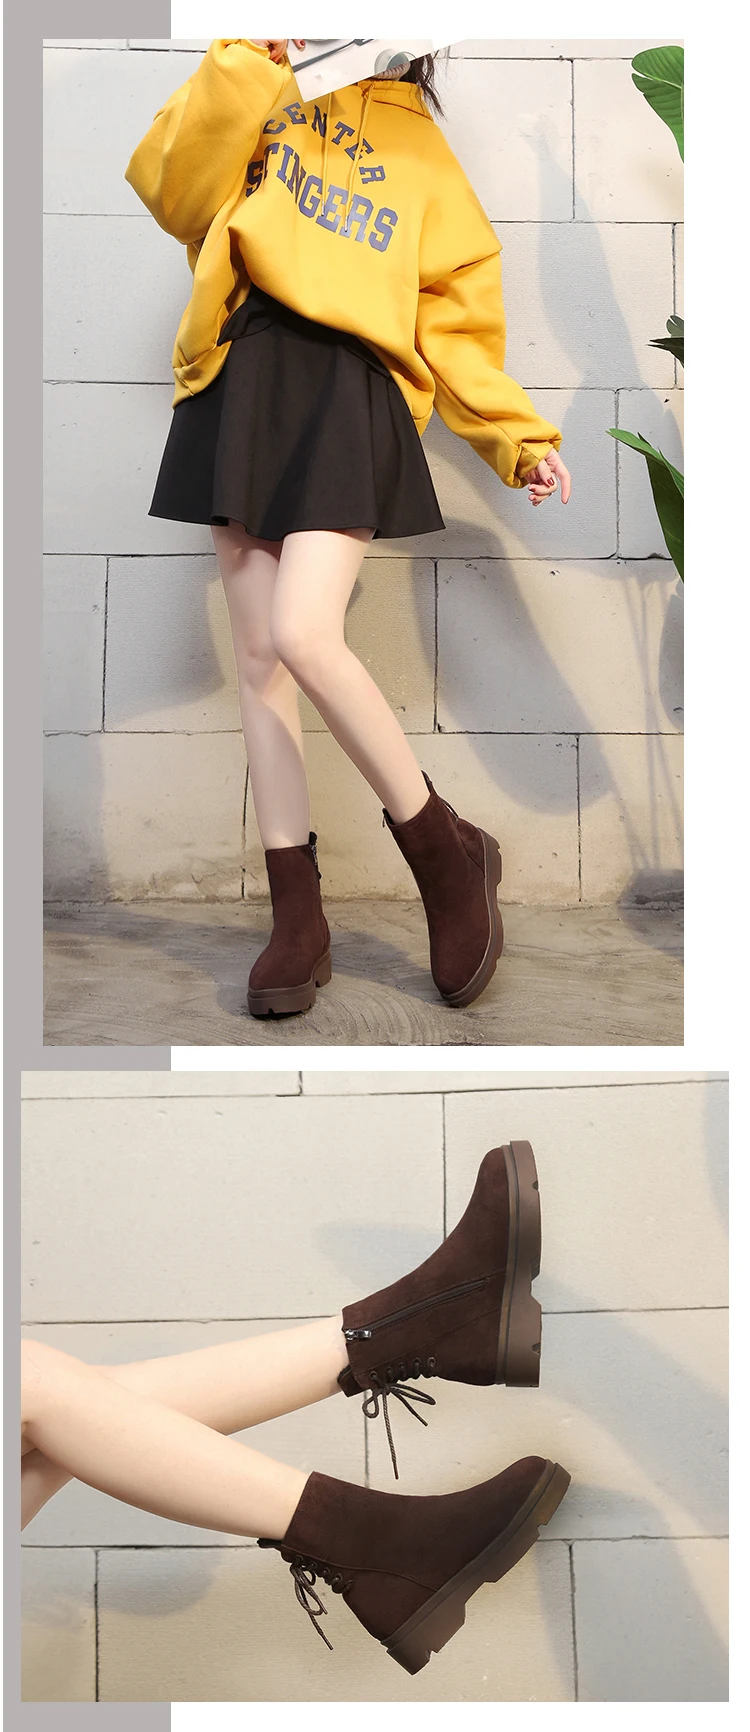 Fujin/женская зимняя обувь из флока, на платформе, со шнуровкой, без шнуровки; Длинные теплые плюшевые меховые ботиночки; ботильоны; зимние женские ботинки